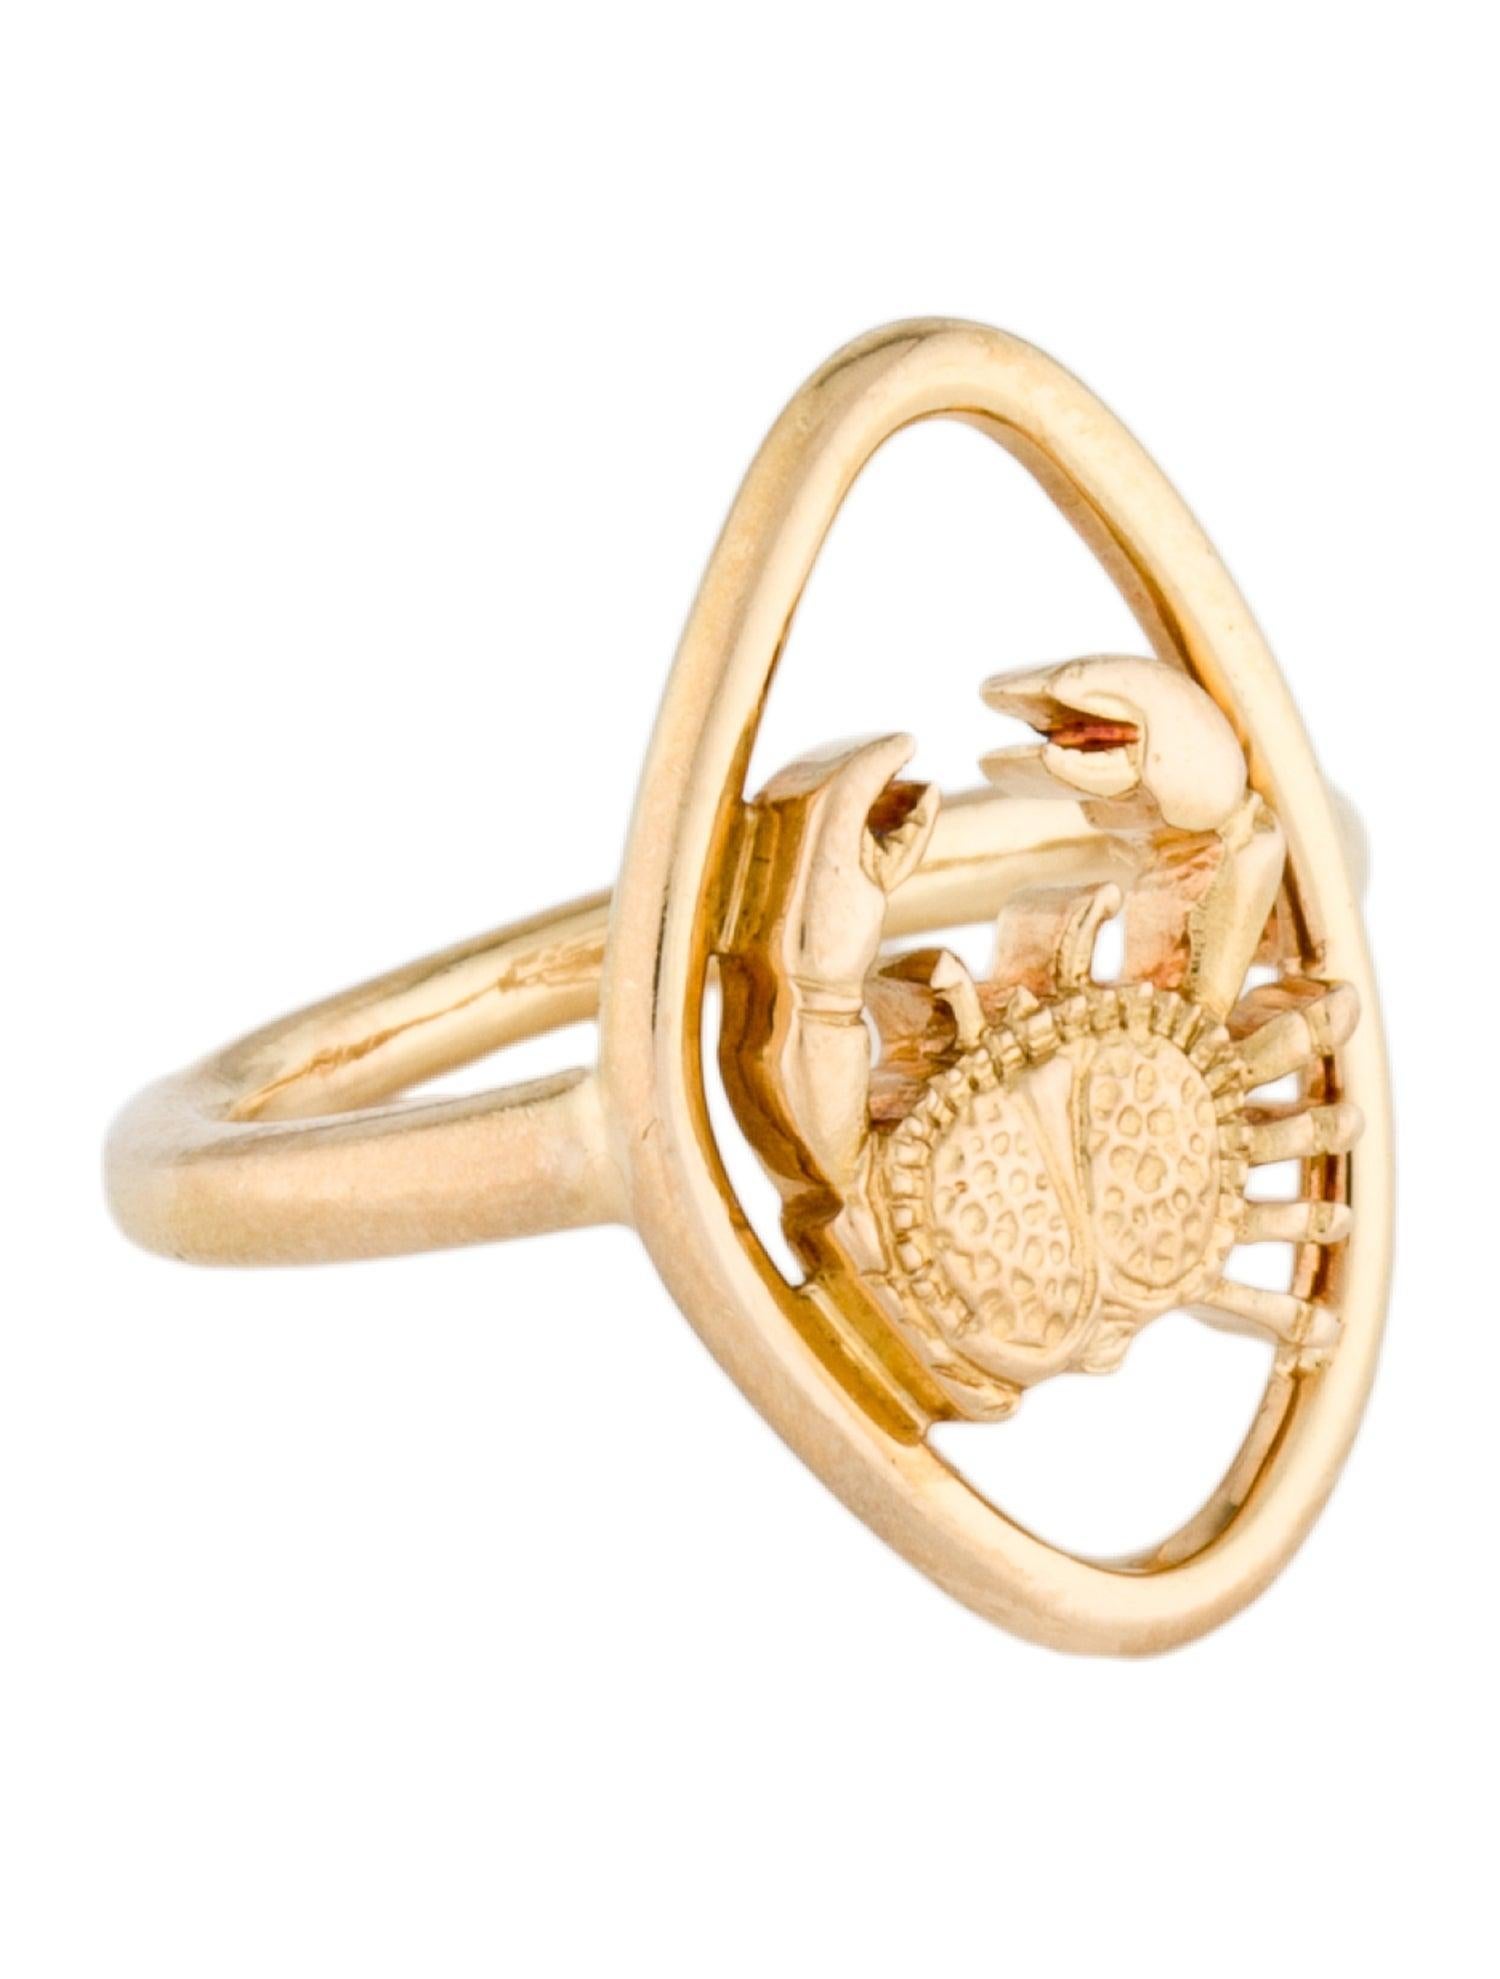 Boucheron Paris 18k Gelbgold Krebs Zodiac Ring Vintage CIRCA 1970s

Hier haben Sie die Chance, einen wunderschönen Designer-Ring mit hohem Sammlerwert zu erwerben.  

Metall Typ: 18K Gelbgold
Zeichen: Designer-Signatur, Französischer